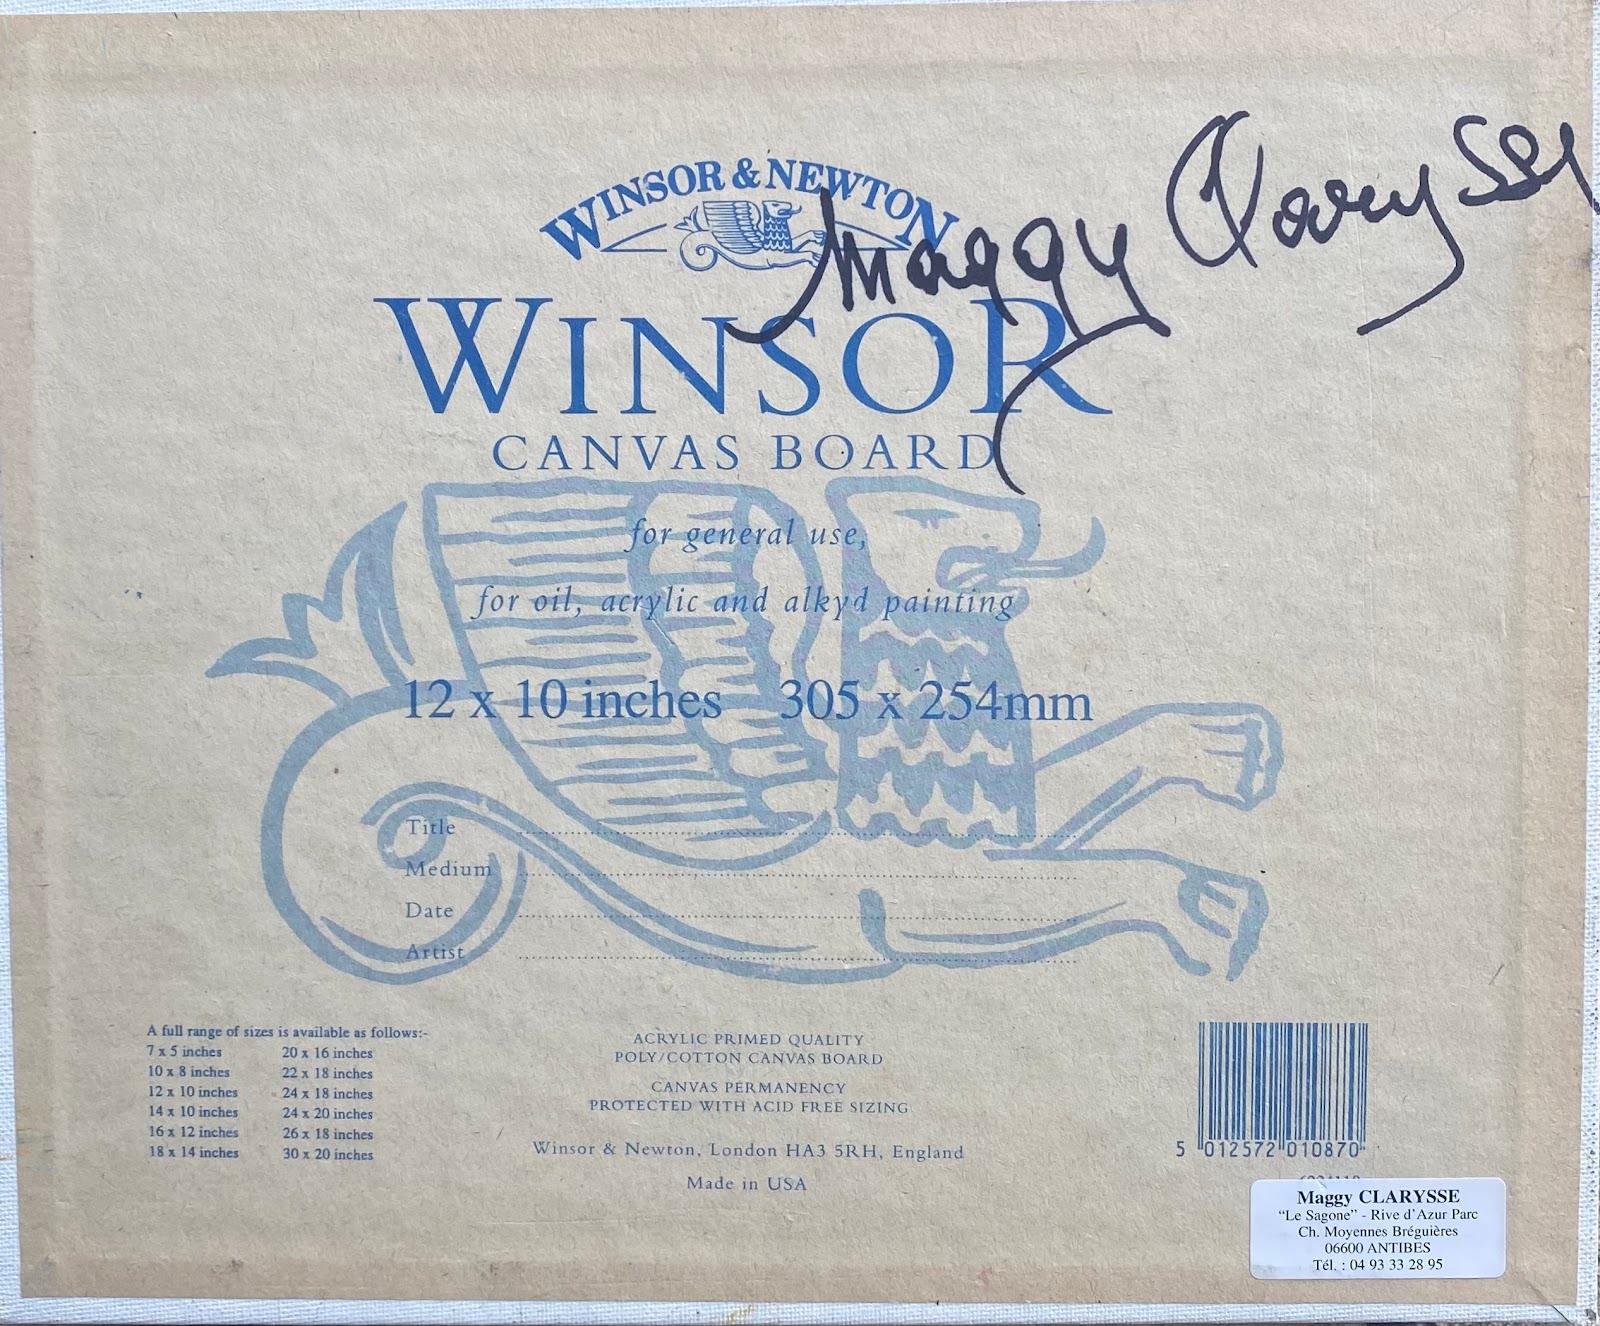 Maggy Clarysse (1931-2011)
Huile sur carton, non encadrée
8.75 x 10.75 pouces
Signé                                                                                                    
état : excellent
provenance : toutes les peintures que nous avons